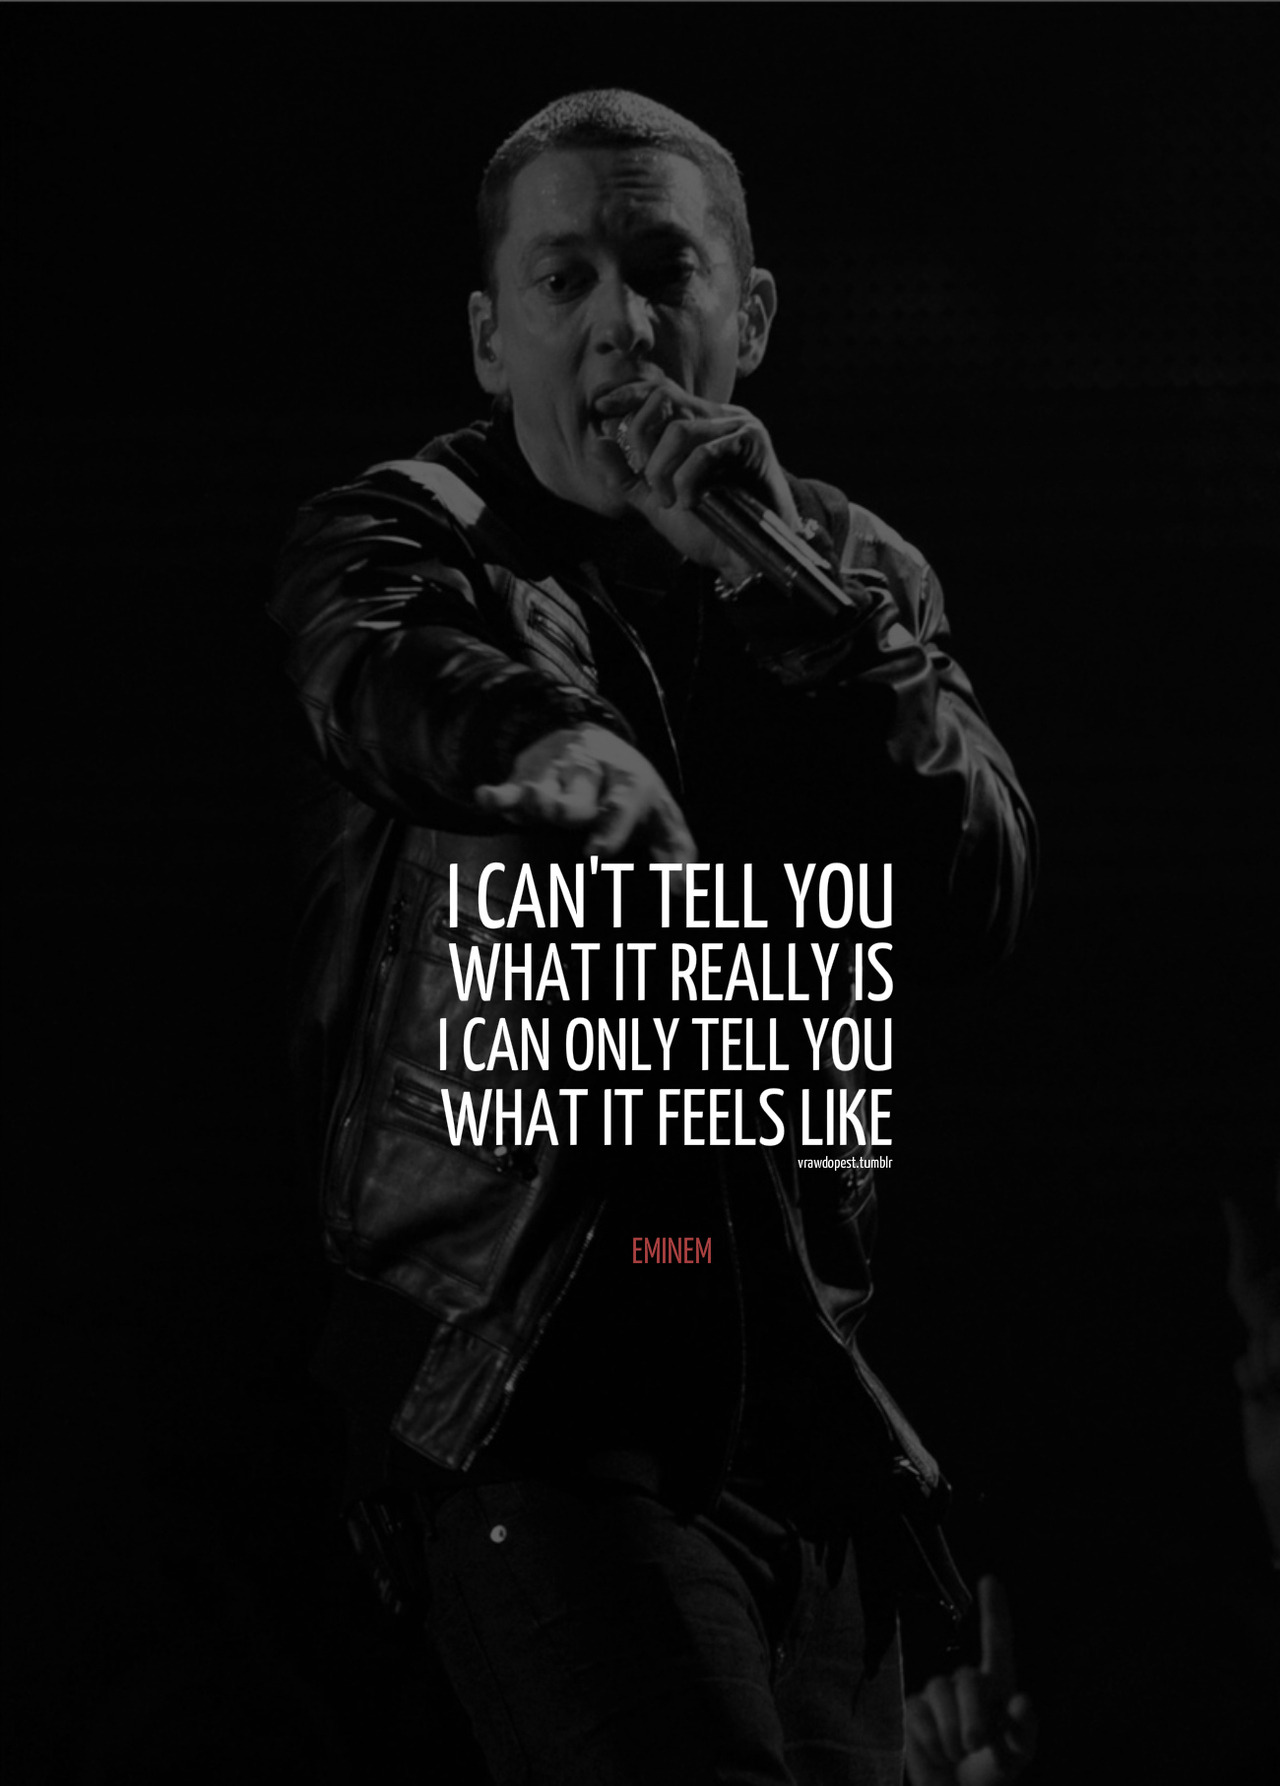 Eminem Quotes About Self Harm. QuotesGram